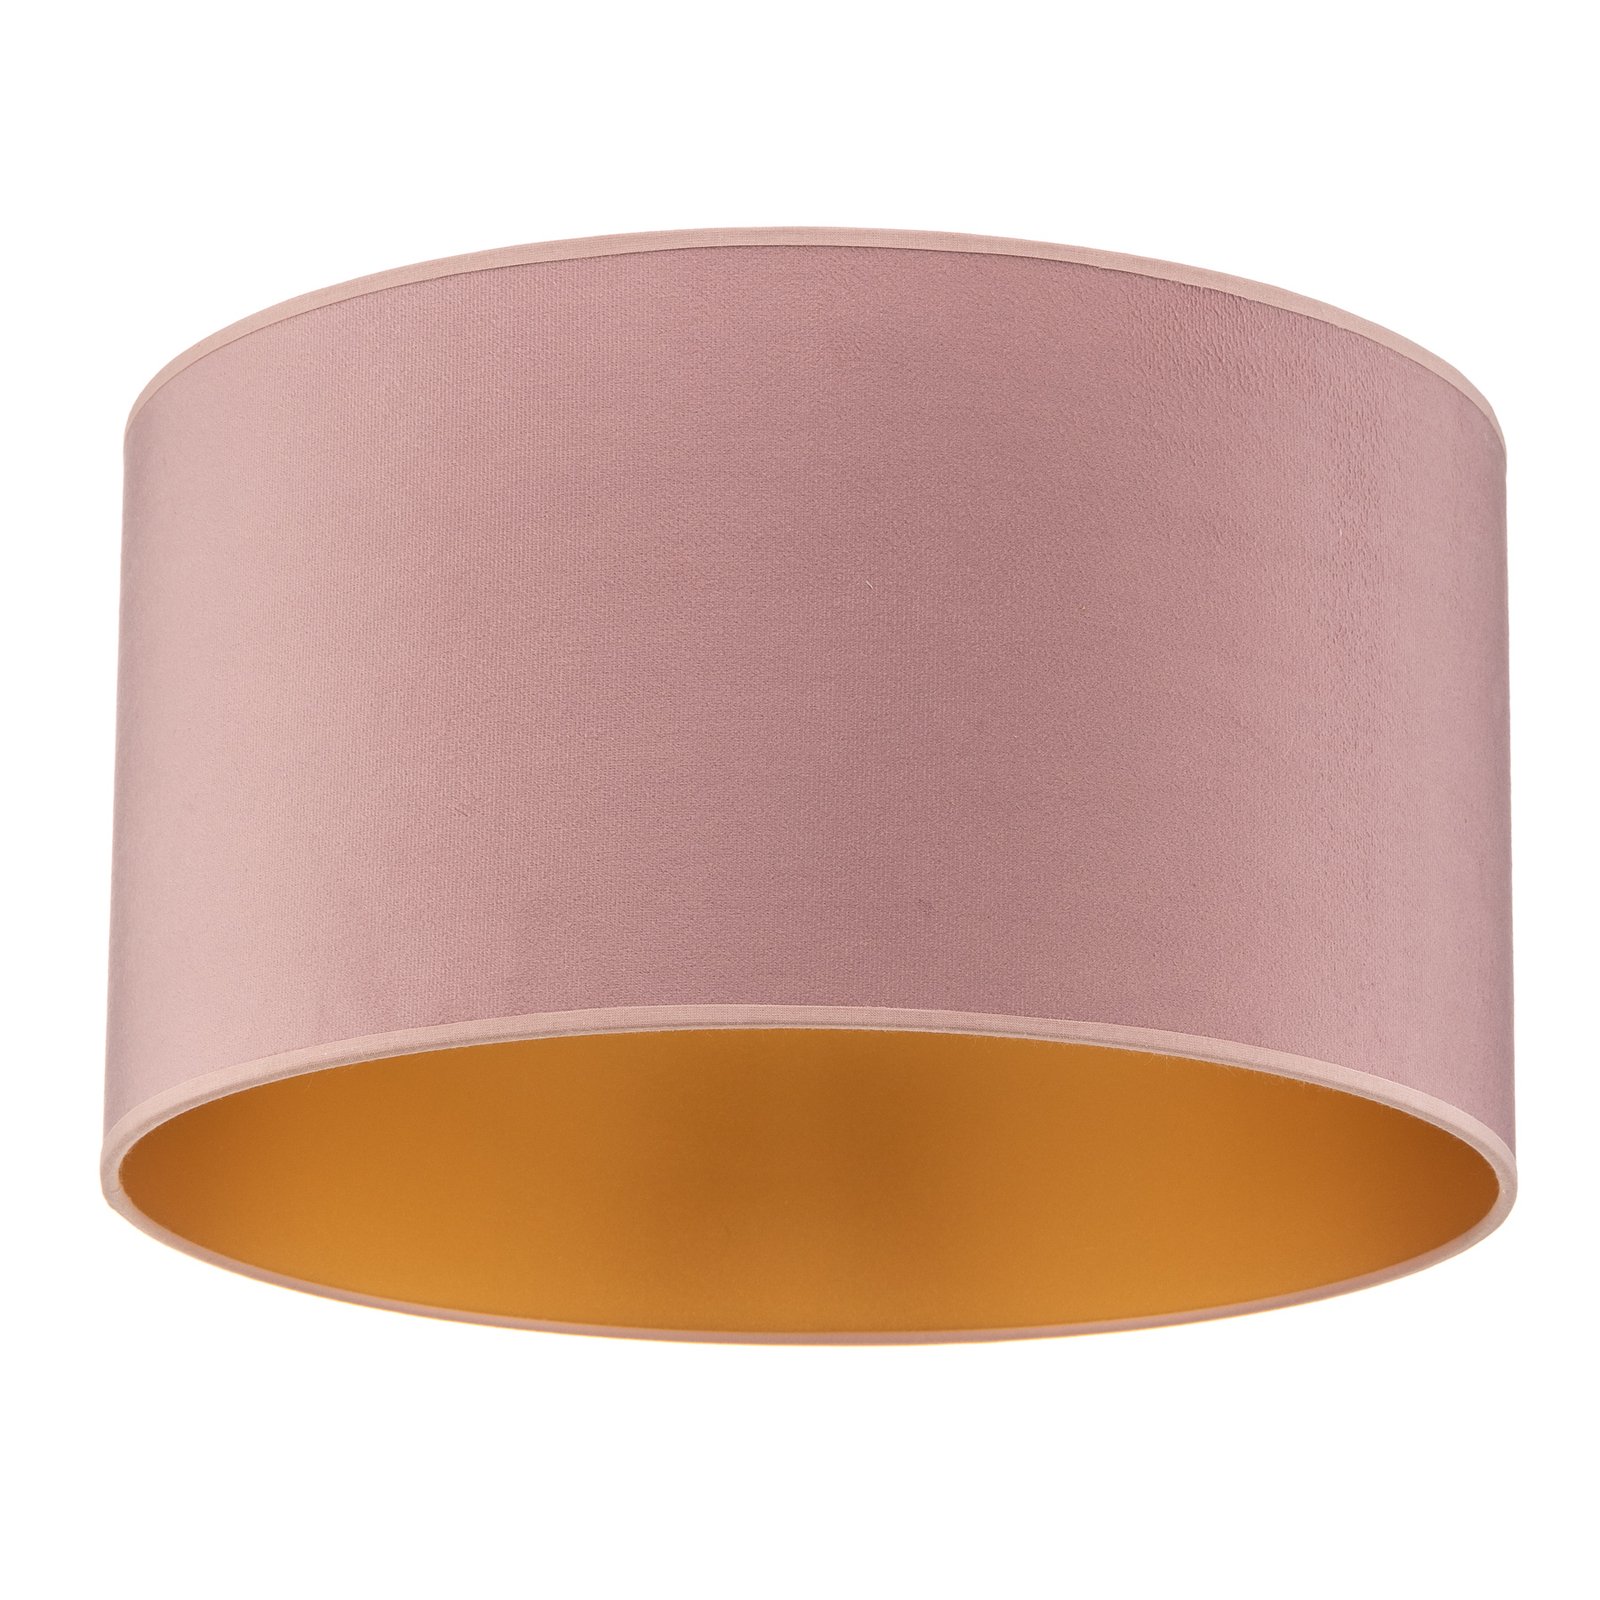 Lampa sufitowa Golden Roller Ø 40 cm różowa/złota